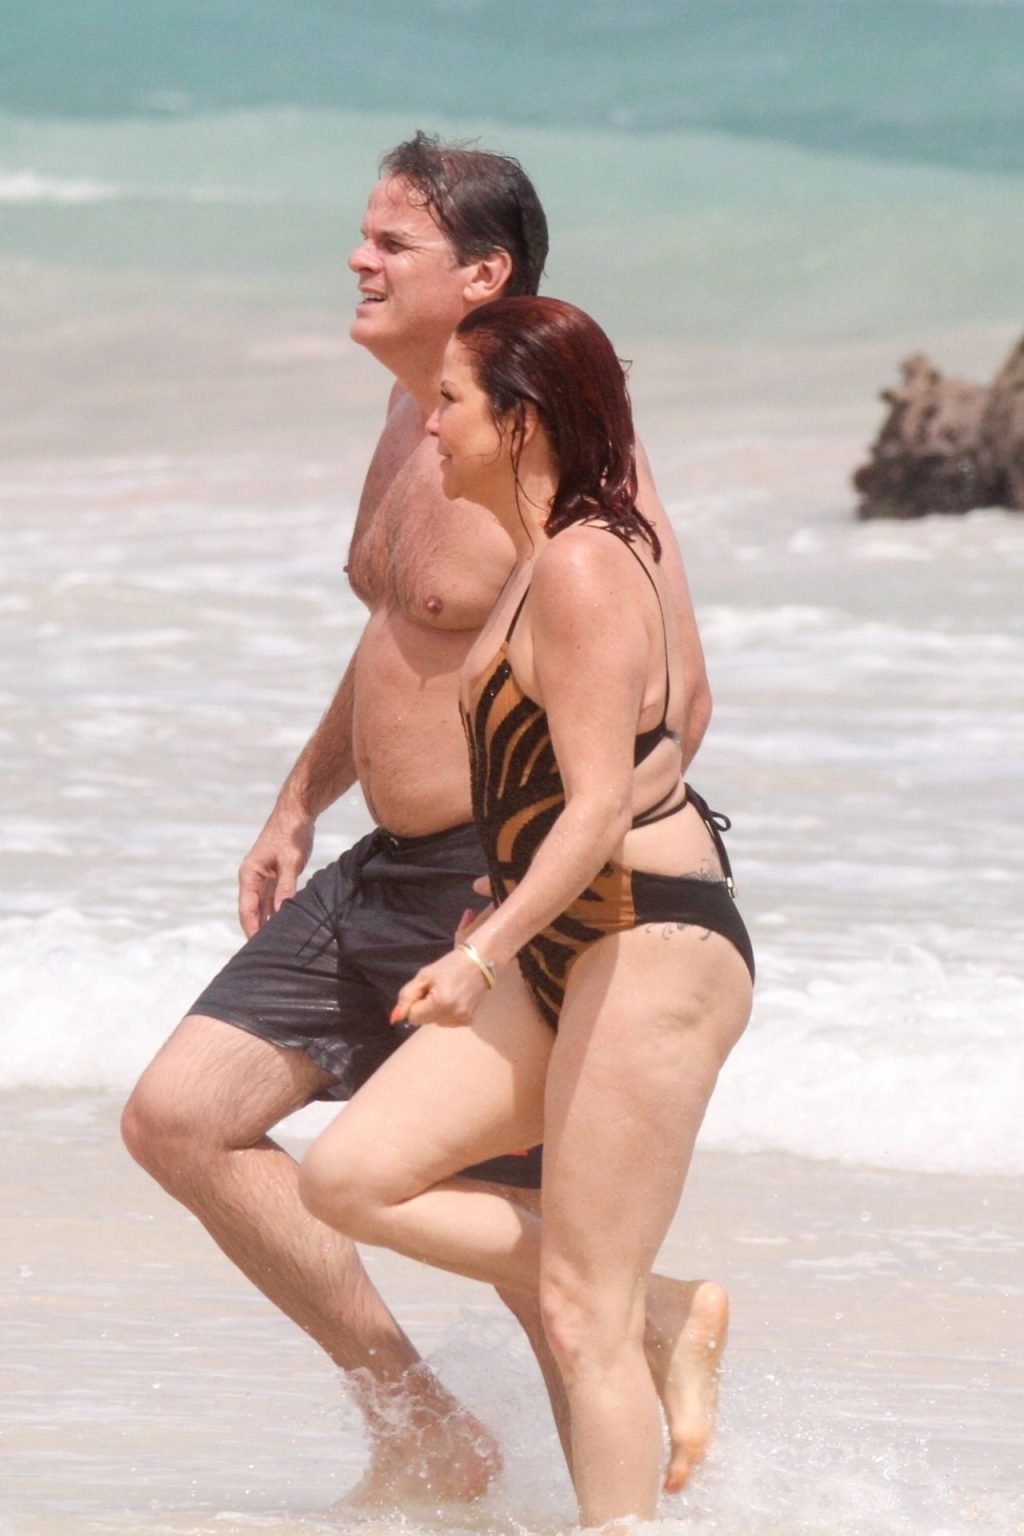 Slash’s Ex-Wife Perla Ferrar is Living Life on the Beach (32 Photos)